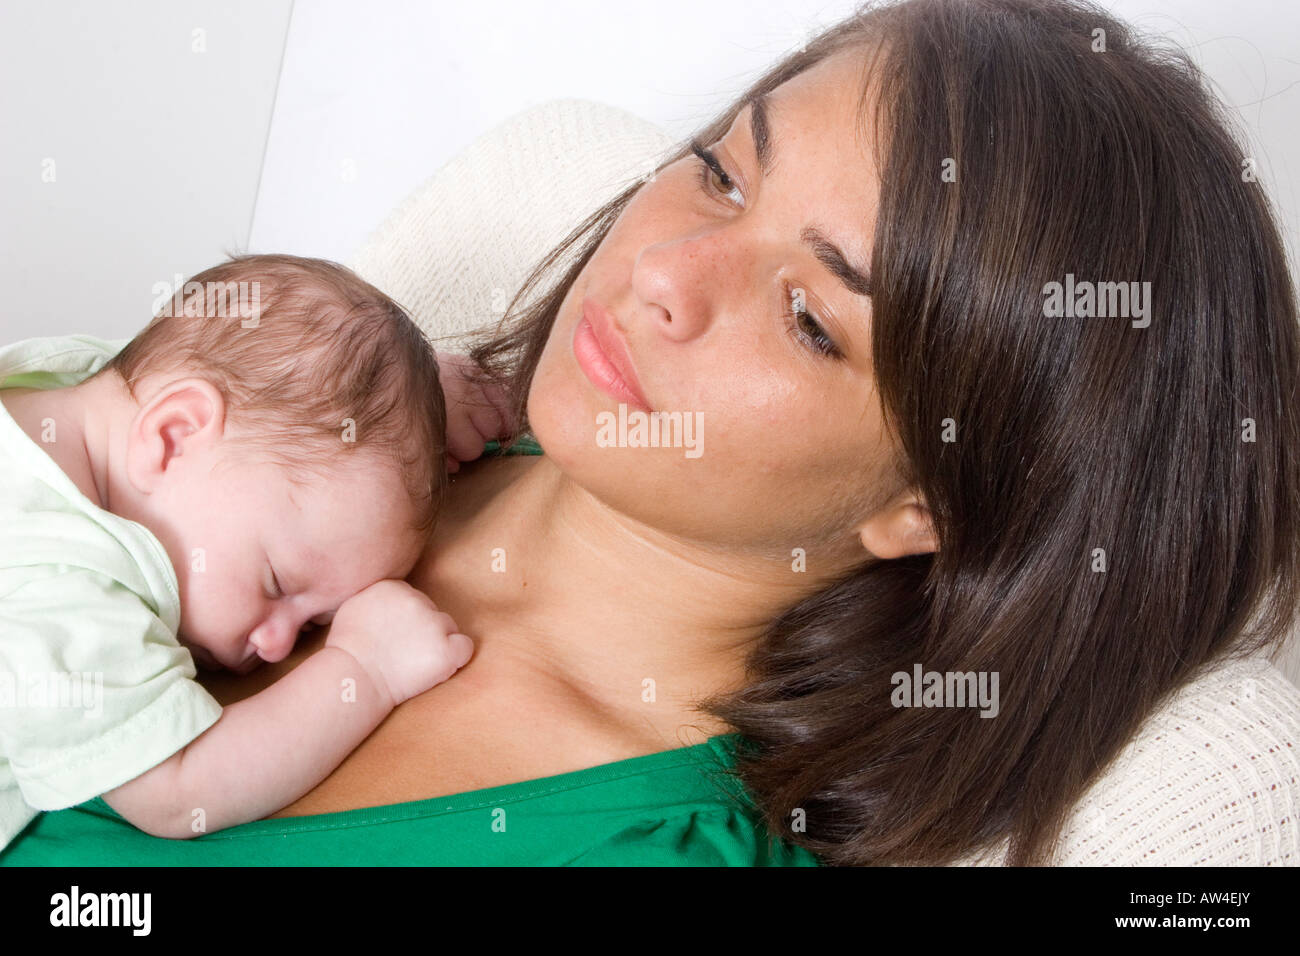 Moody donna e bambino neonato Foto Stock